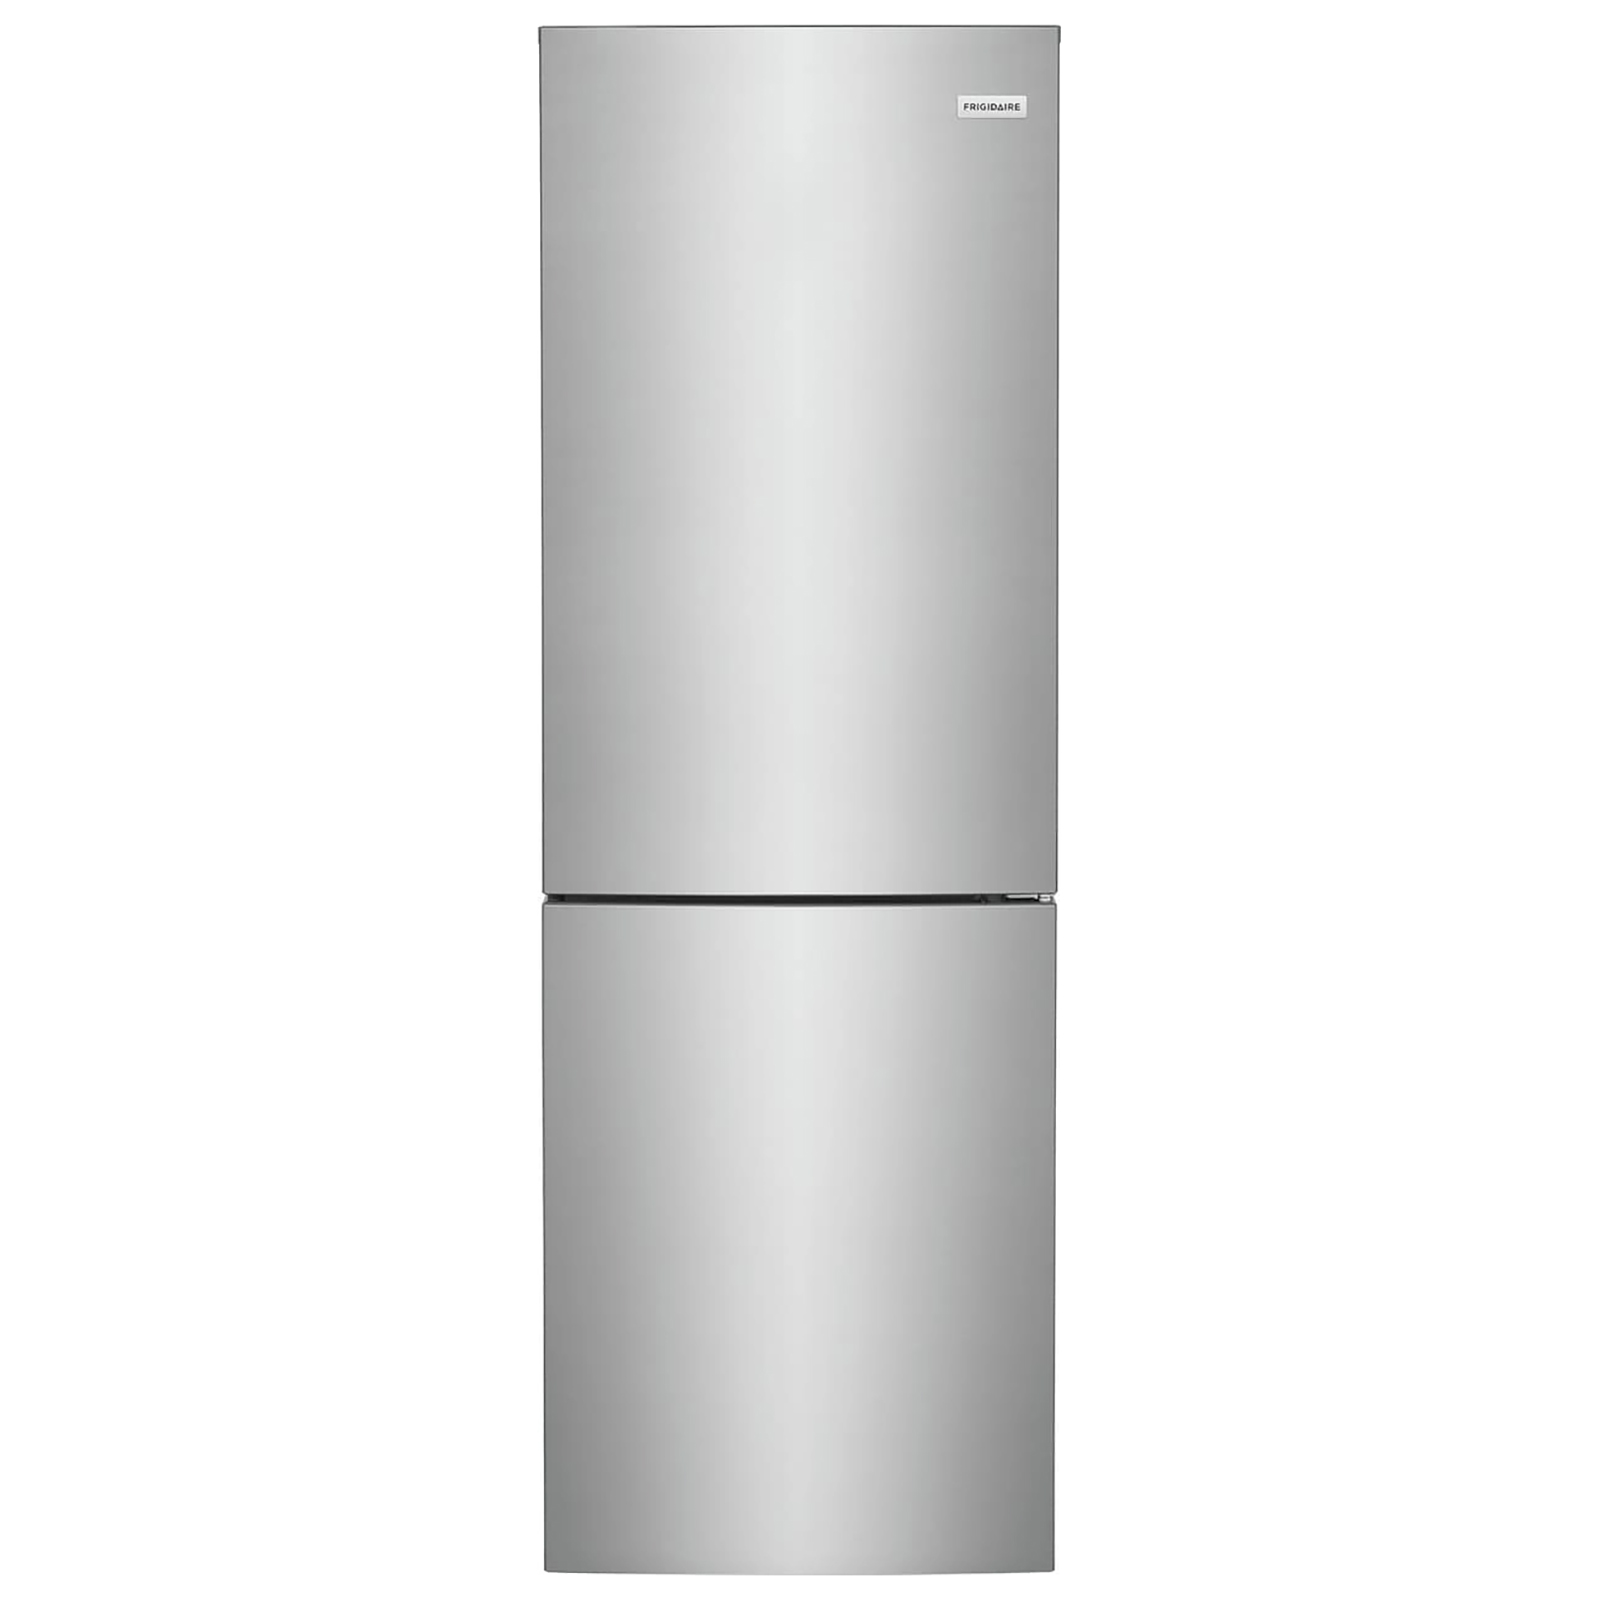 Frigidaire FRBG1224AV 24" Bottom Freezer Refrigerator - Stainless Steel